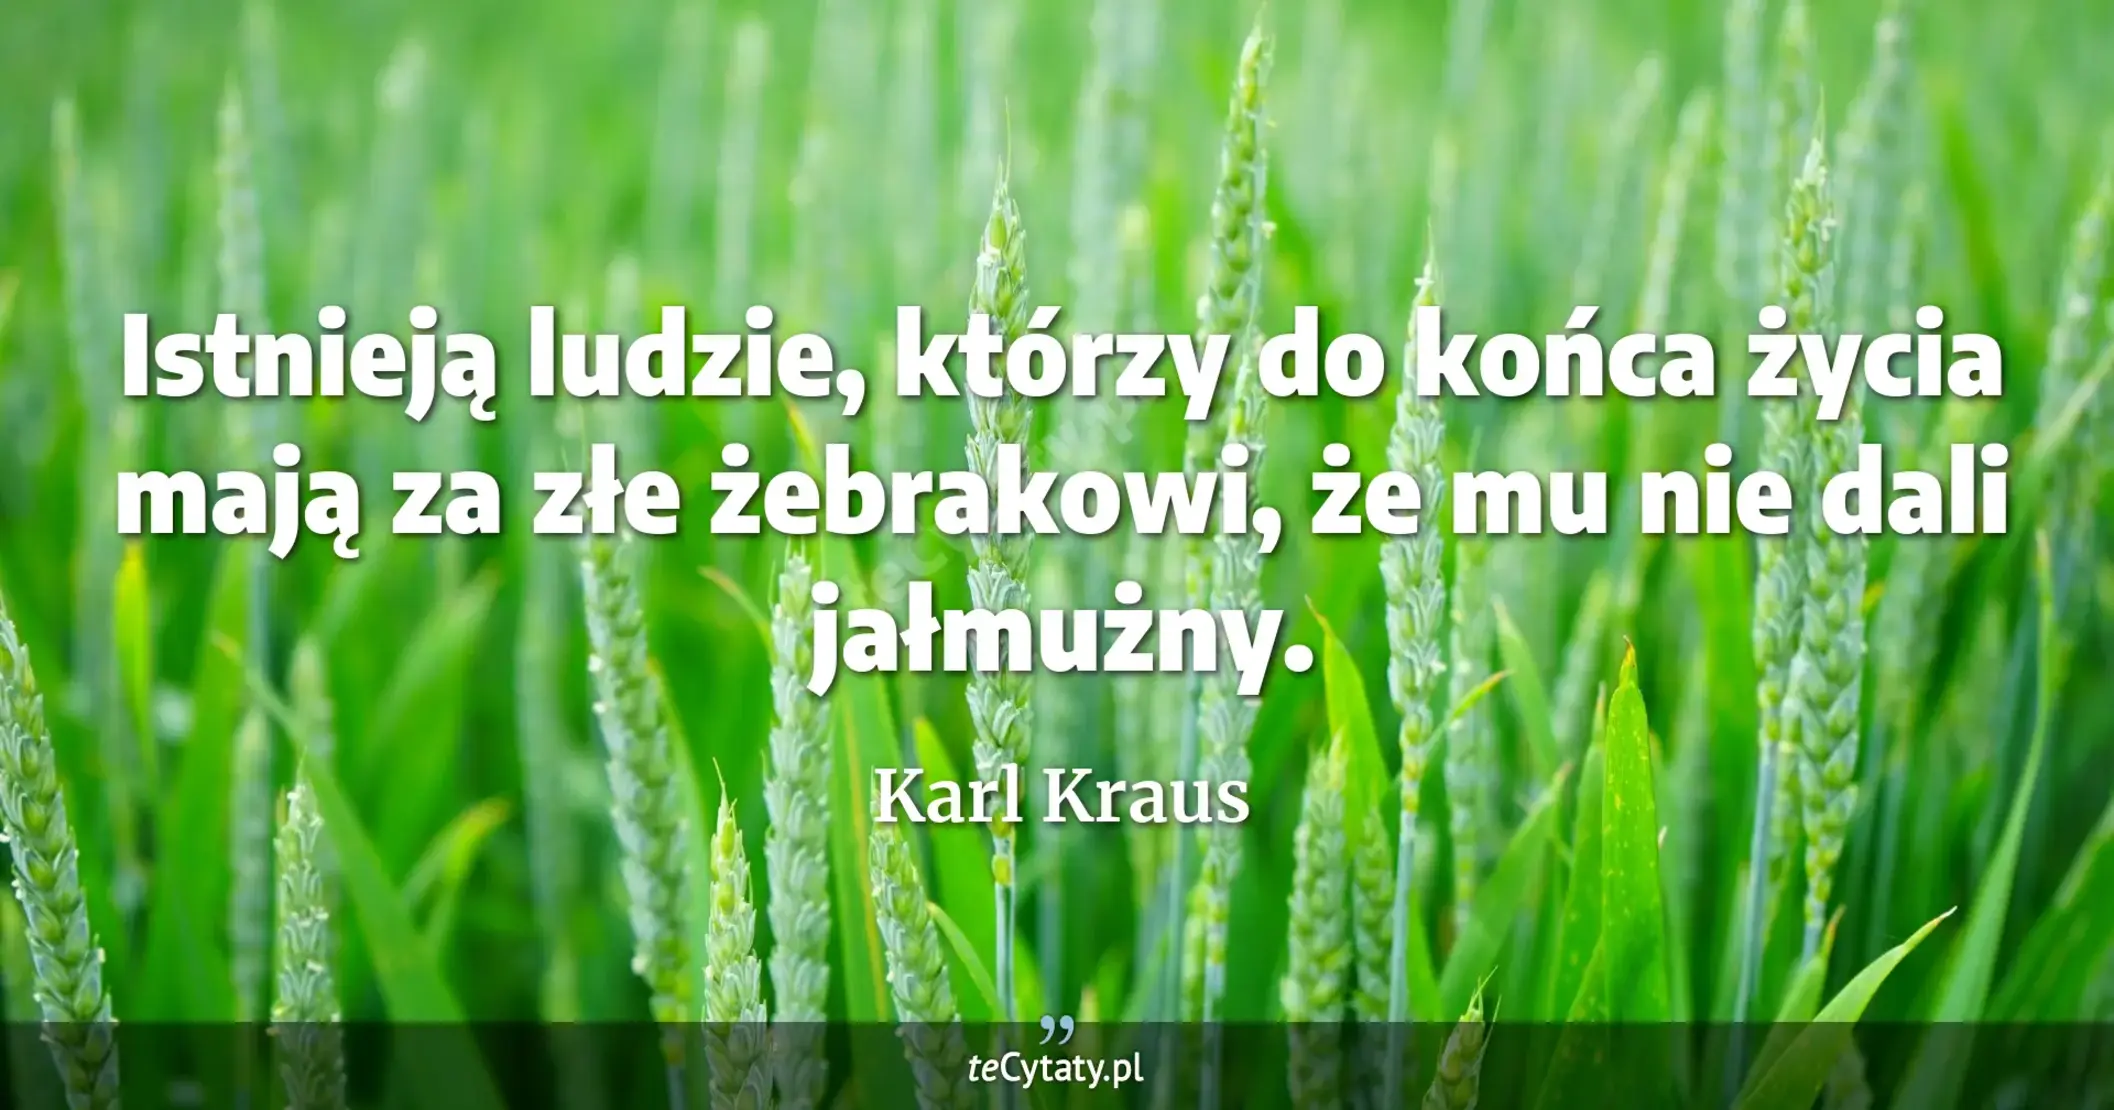 Istnieją ludzie, którzy do końca życia mają za złe żebrakowi, że mu nie dali jałmużny. - Karl Kraus